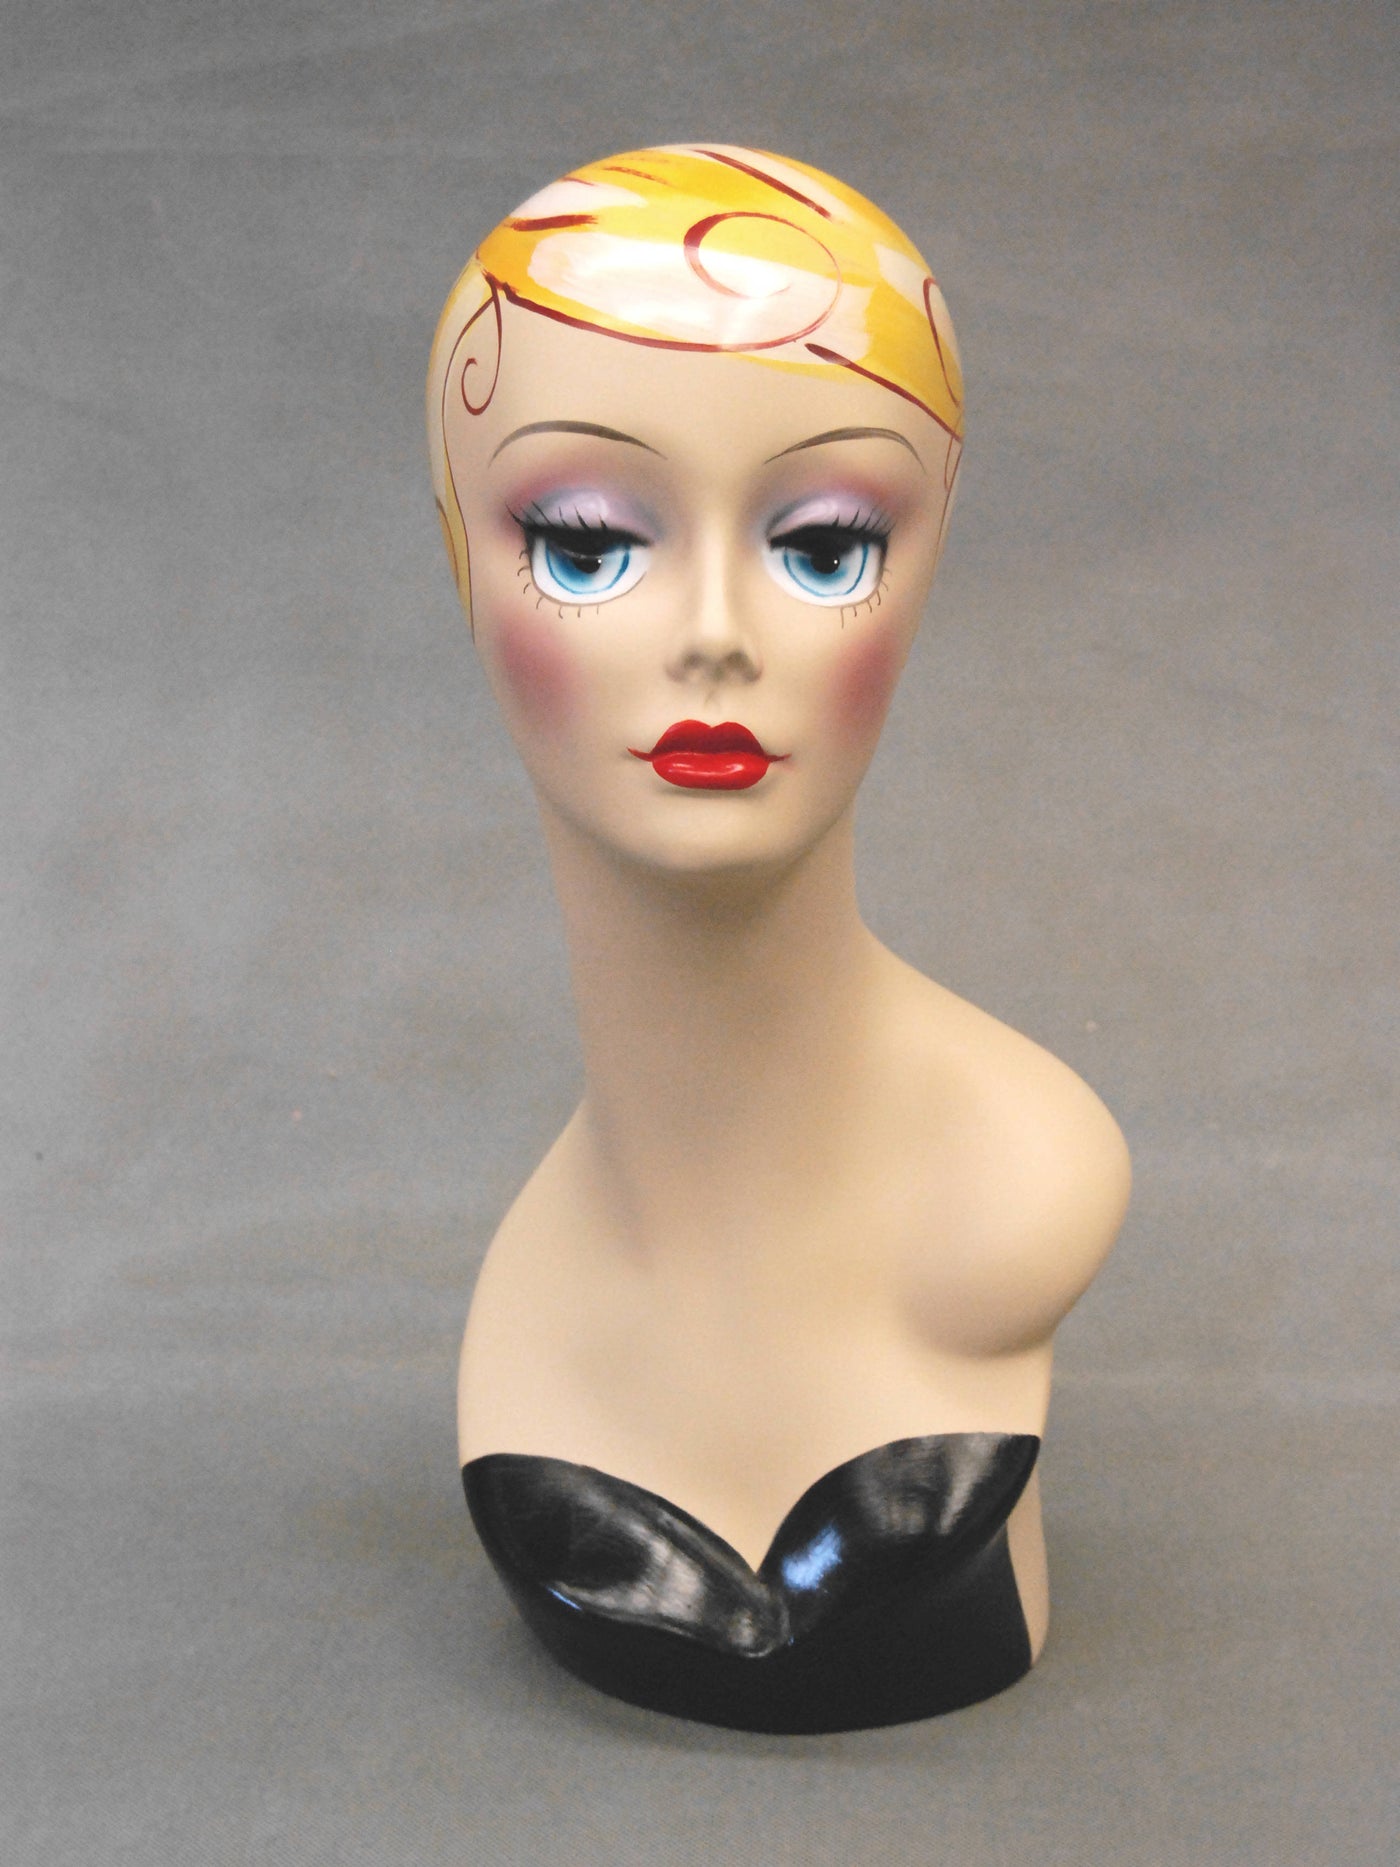 Vintage-style Female Head: Veronica 2